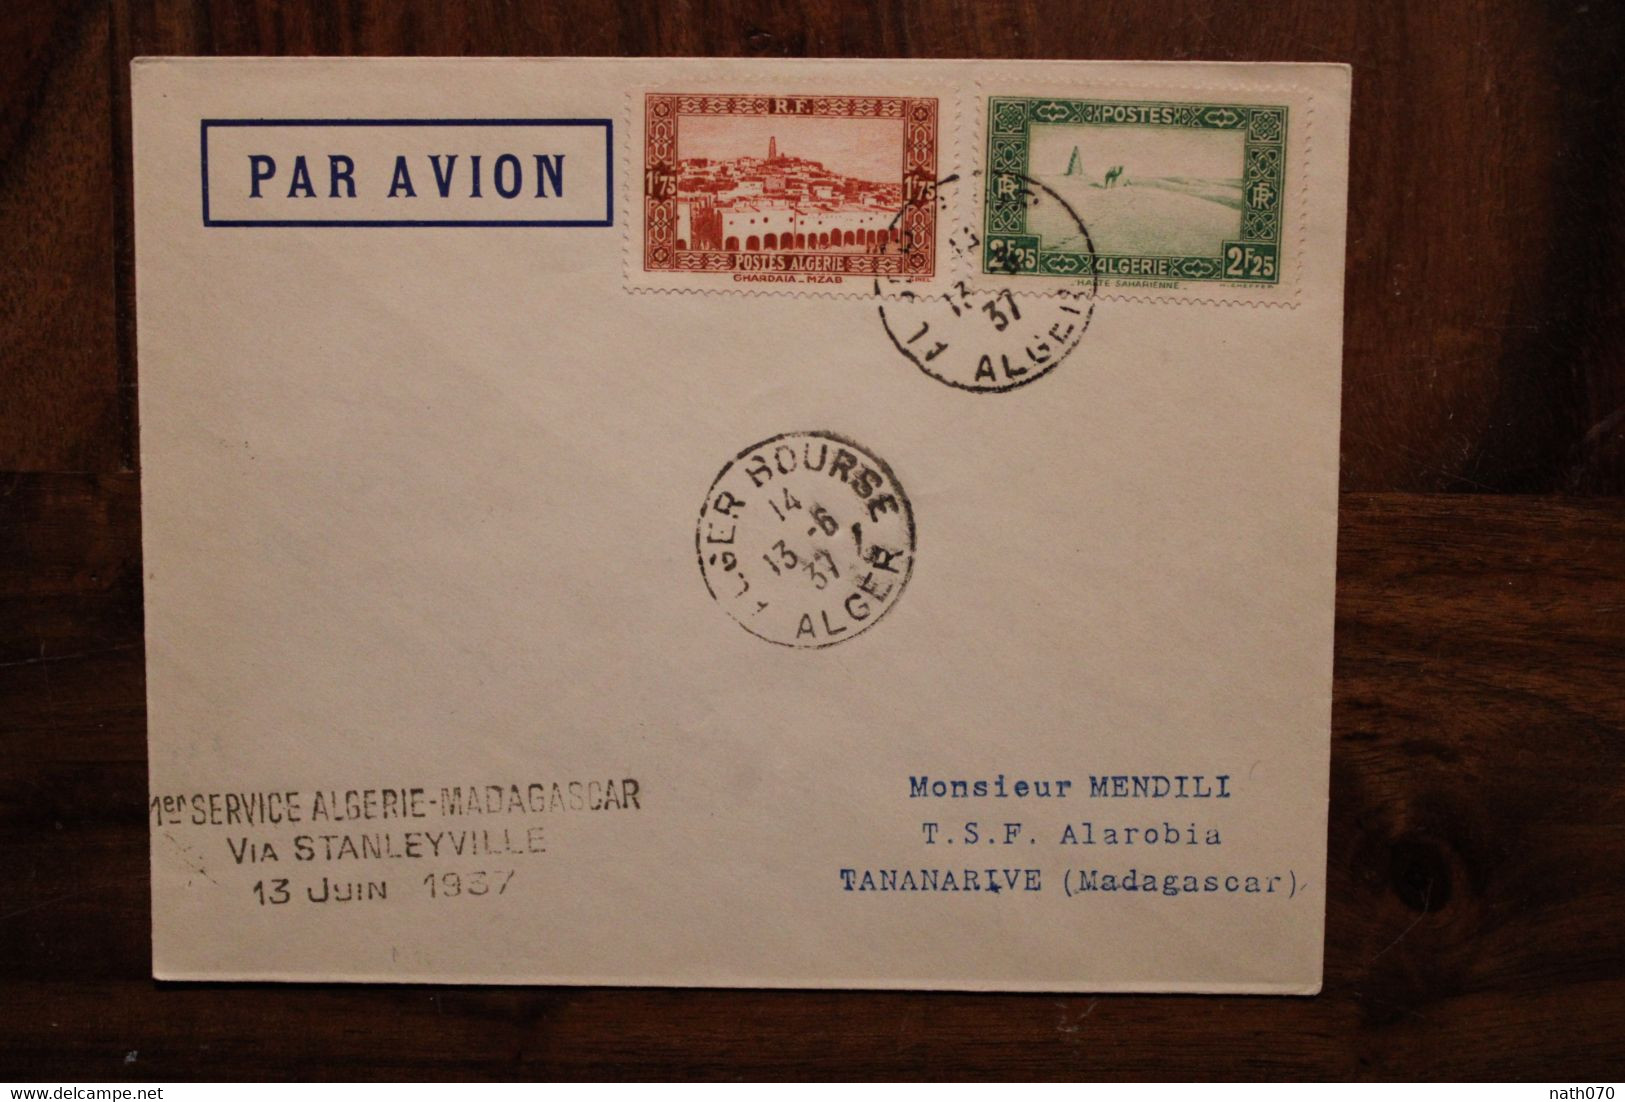 1937 1er Service Algérie Madagascar France Via Stanleyville  Enveloppe Cover Colonie Par Avion Air Mail - Poste Aérienne